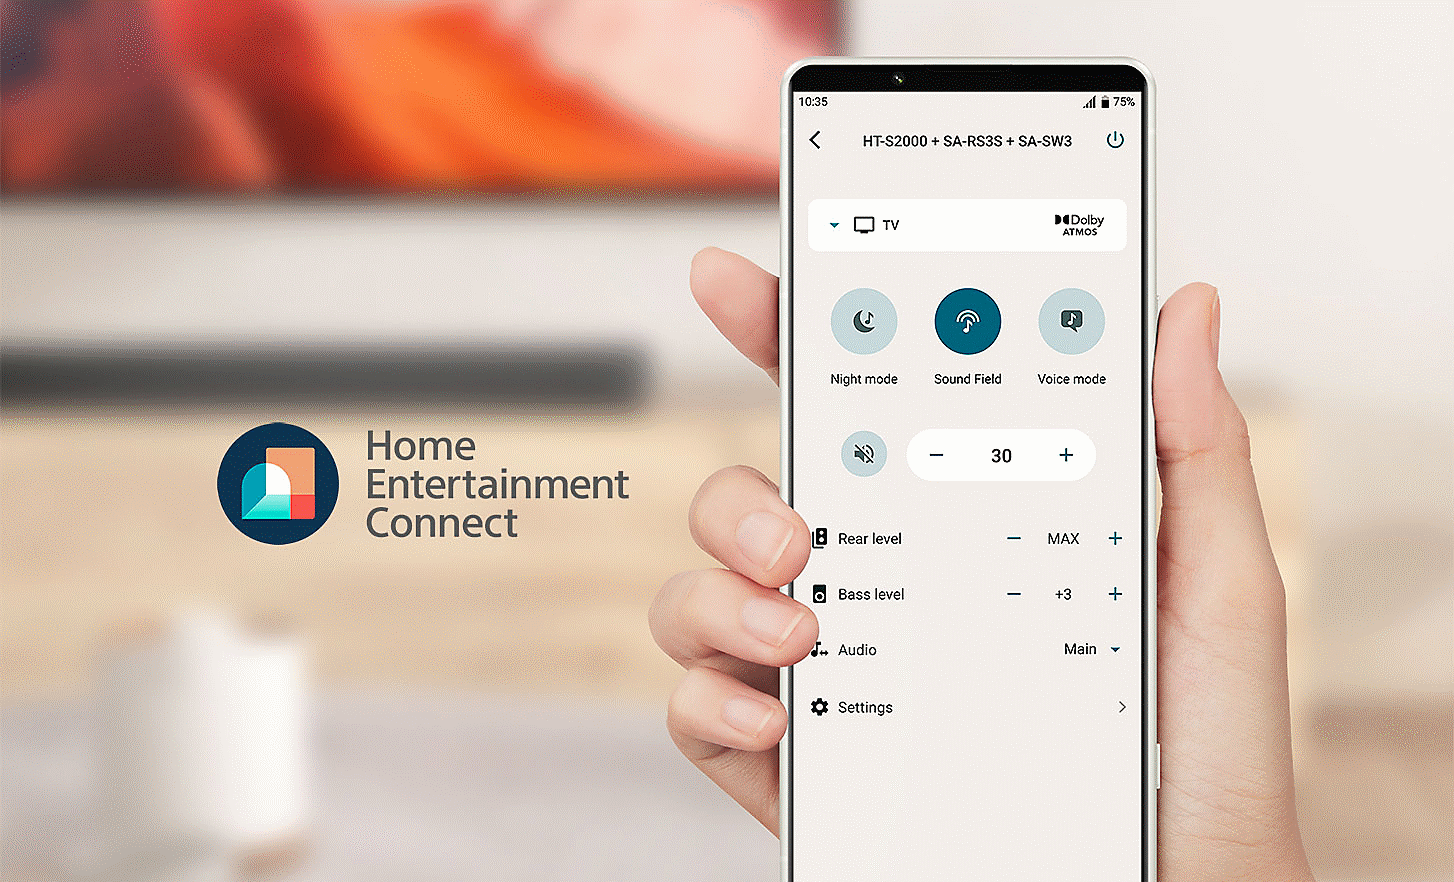 Abbildung einer Hand mit einem Mobiltelefon, auf dem ein Einstellungsmenü angezeigt wird, auf der linken Seite befindet sich das Logo von Home Entertainment Connect